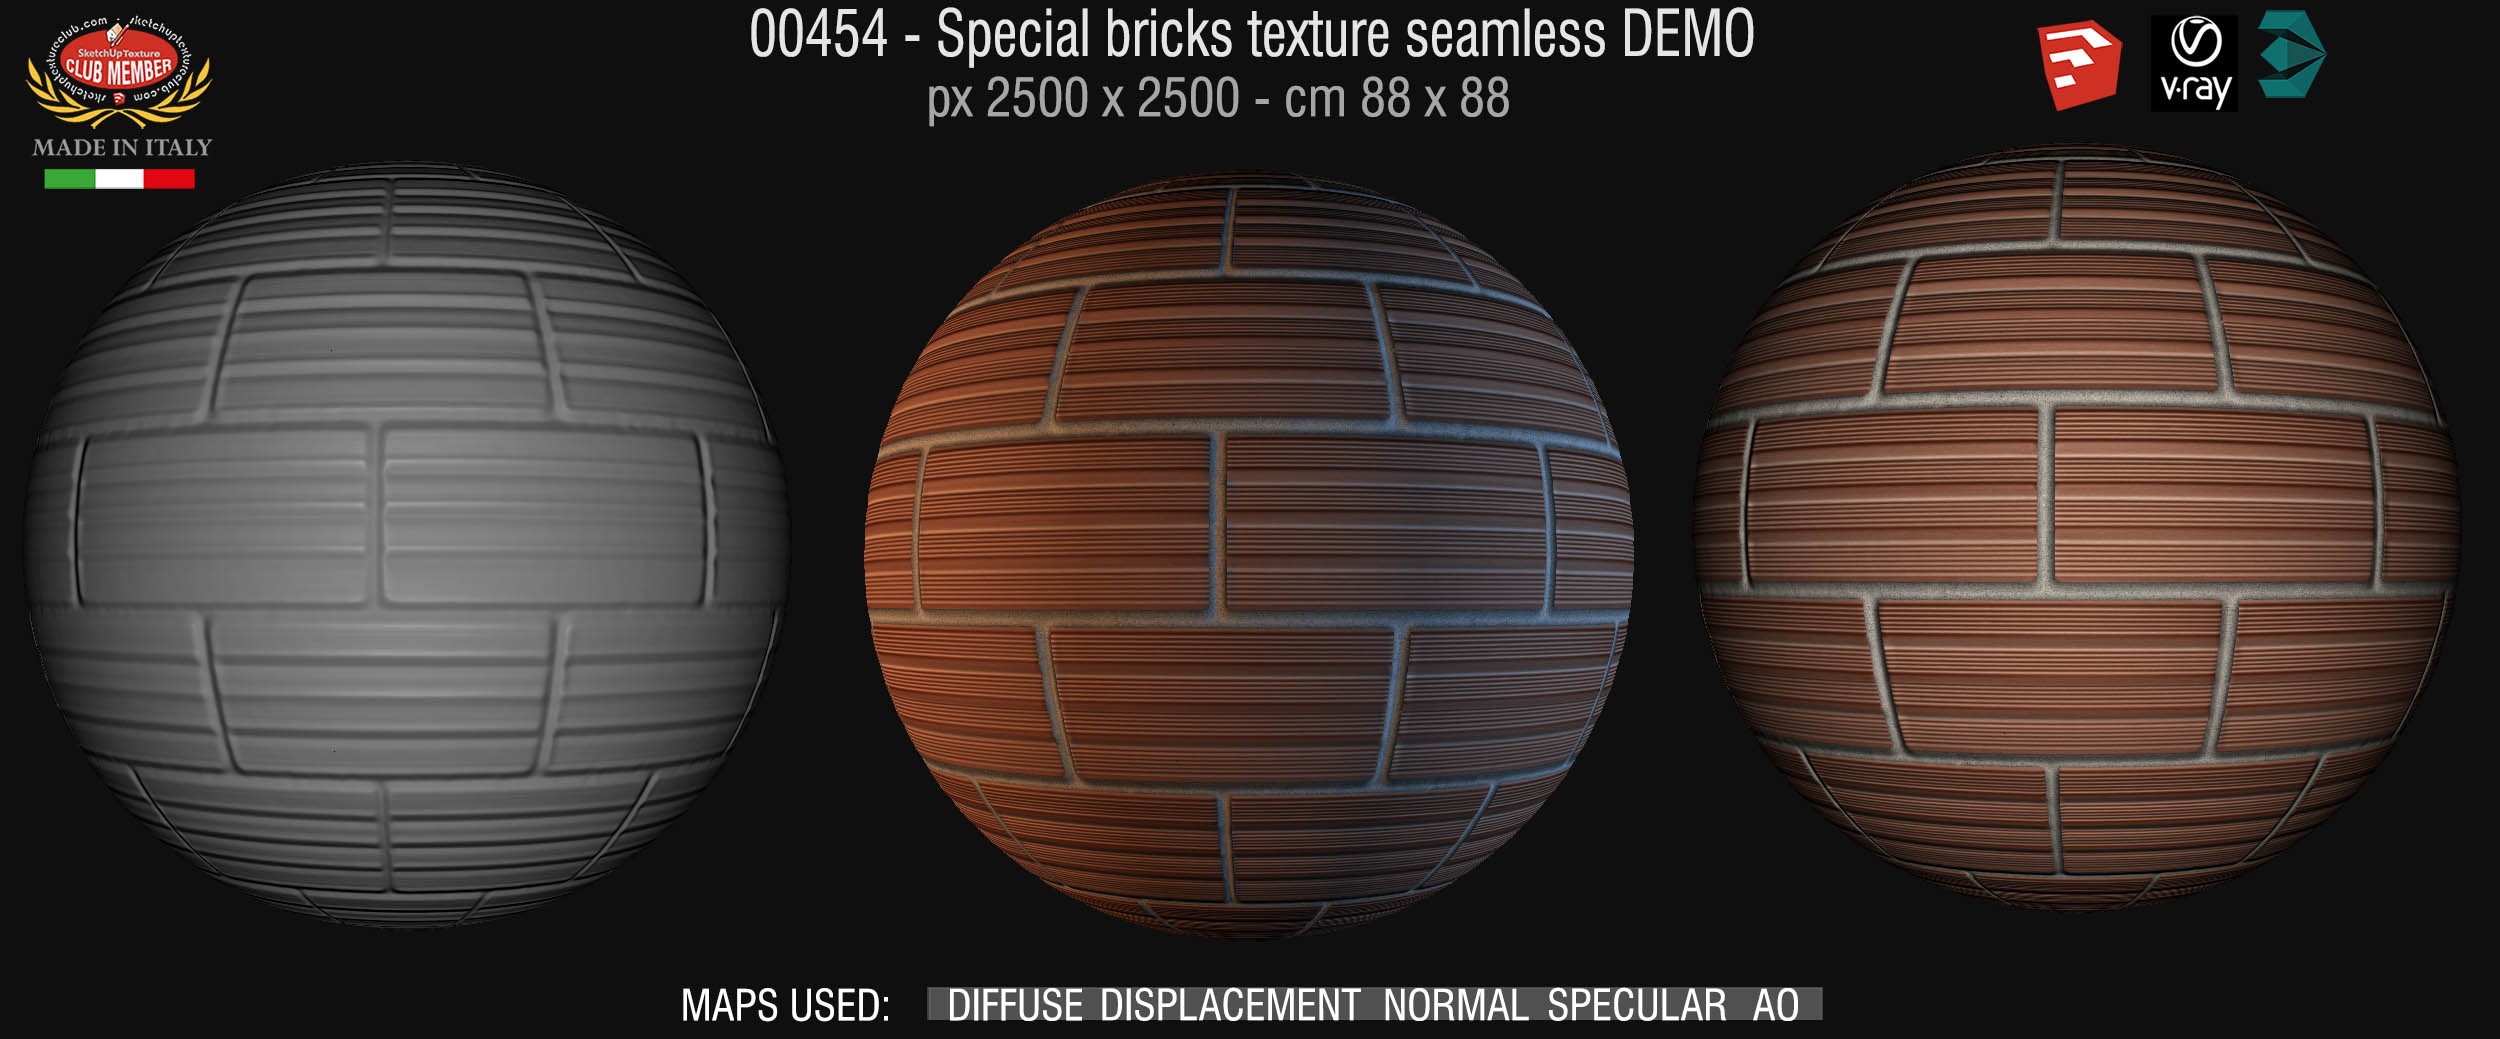 00454 Special bricks texture seamless + maps DEMO